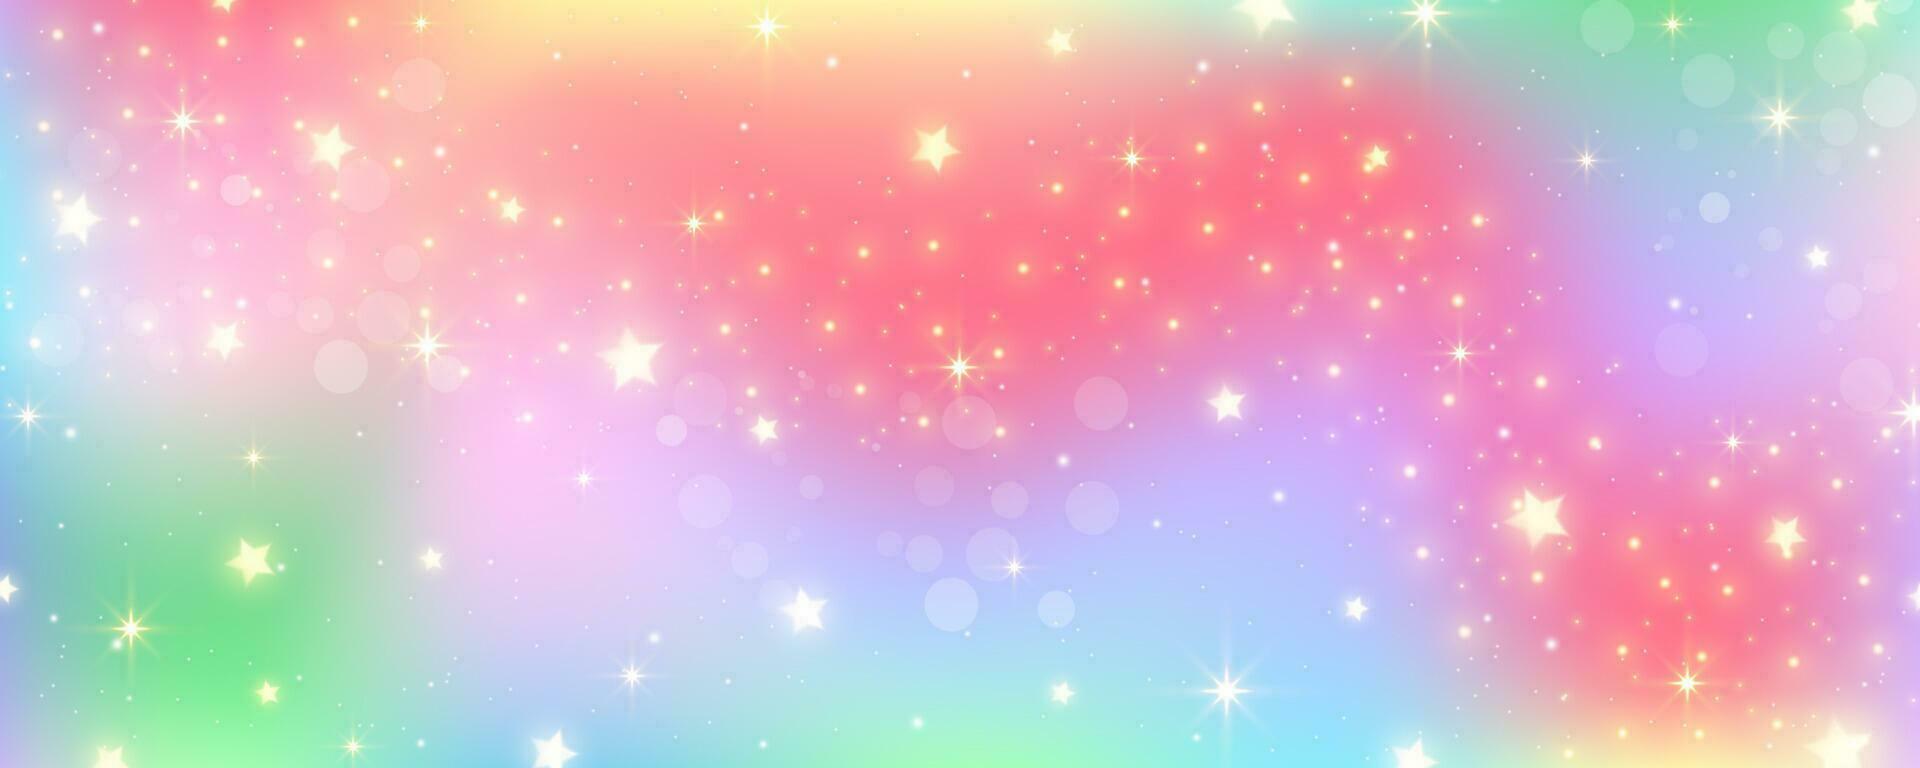 regenboog pastel achtergrond met sterren. eenhoorn schitteren heelal. abstract fantasie ruimte. holografische iriserend ontwerp met schittert. vector kosmisch bg.